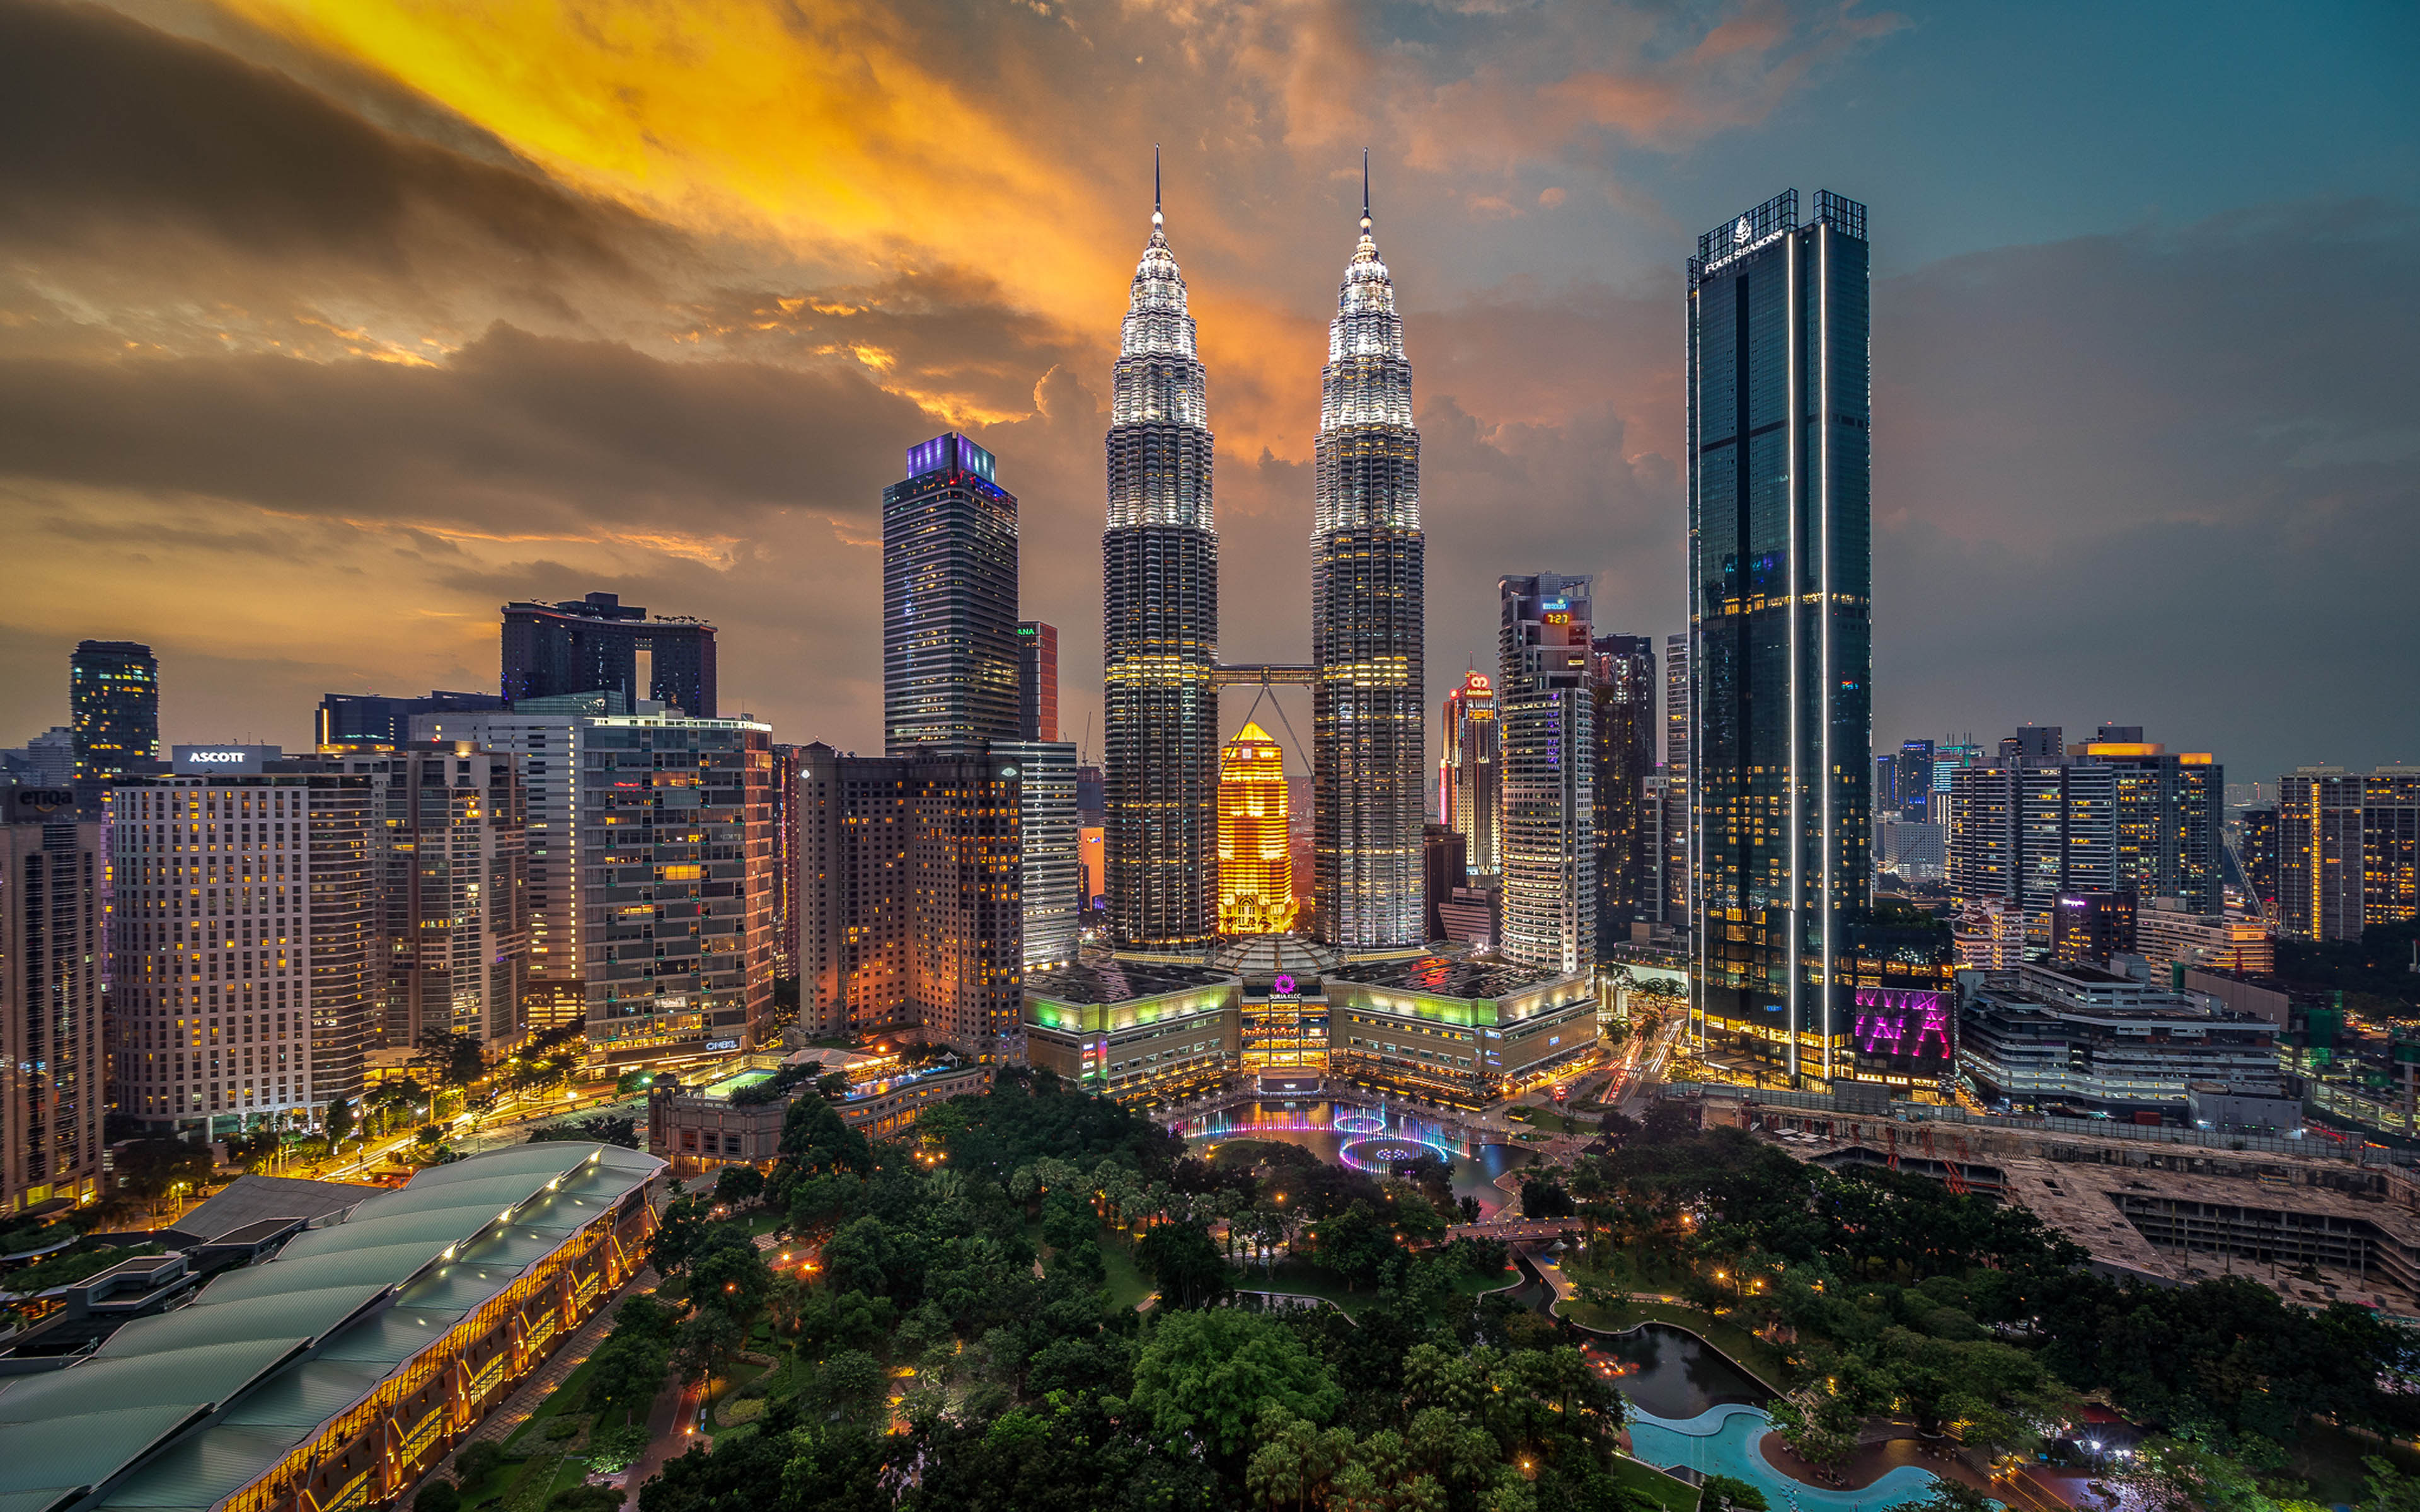 Petronas Twin Towers Kuala Lumpur Malaysia 4k Ultra Hd Wallpapers For